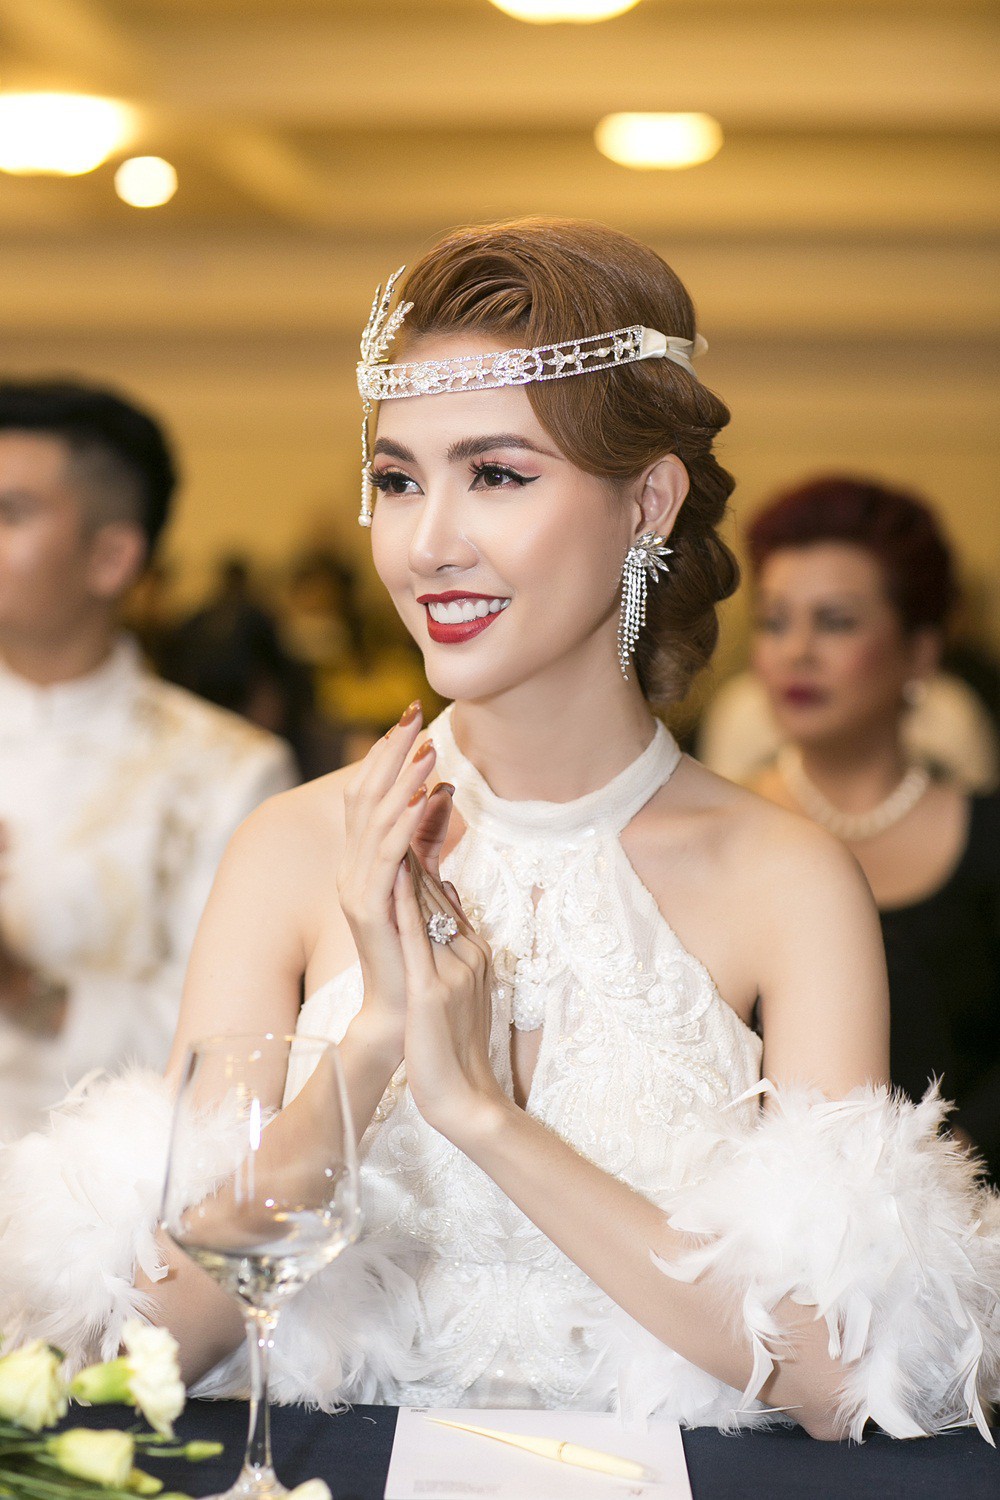 Phan Thị Mơ đeo nhẫn kim cương 5,5 tỷ đồng, lên tiếng trước tin đồn sắp lấy chồng đại gia - Ảnh 7.